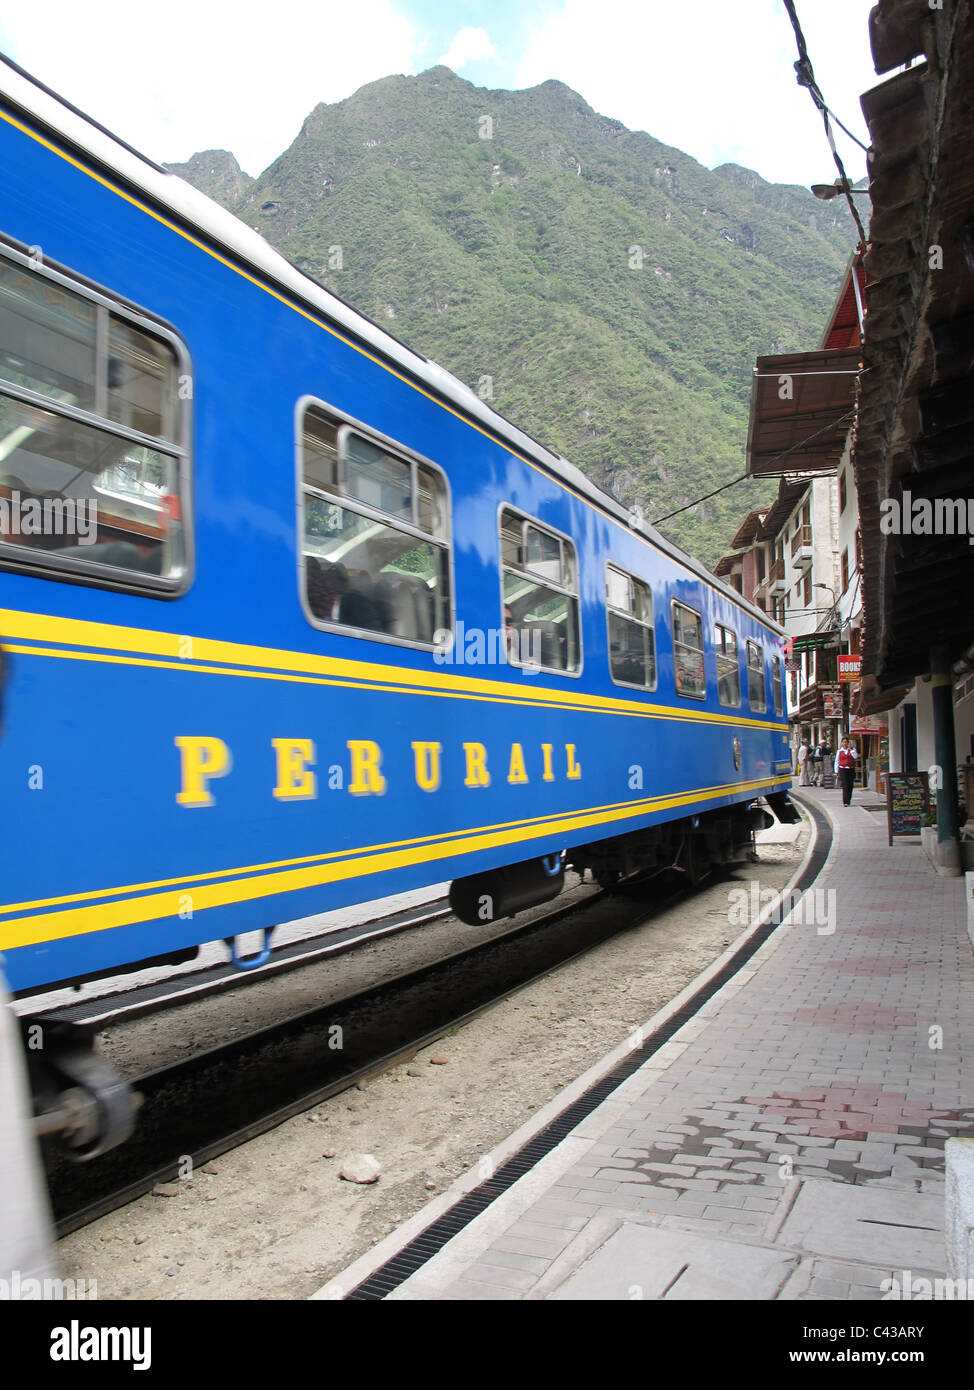 A train of Perurail passing Agua Calientes, near Machu Picchu, Peru Stock Photo